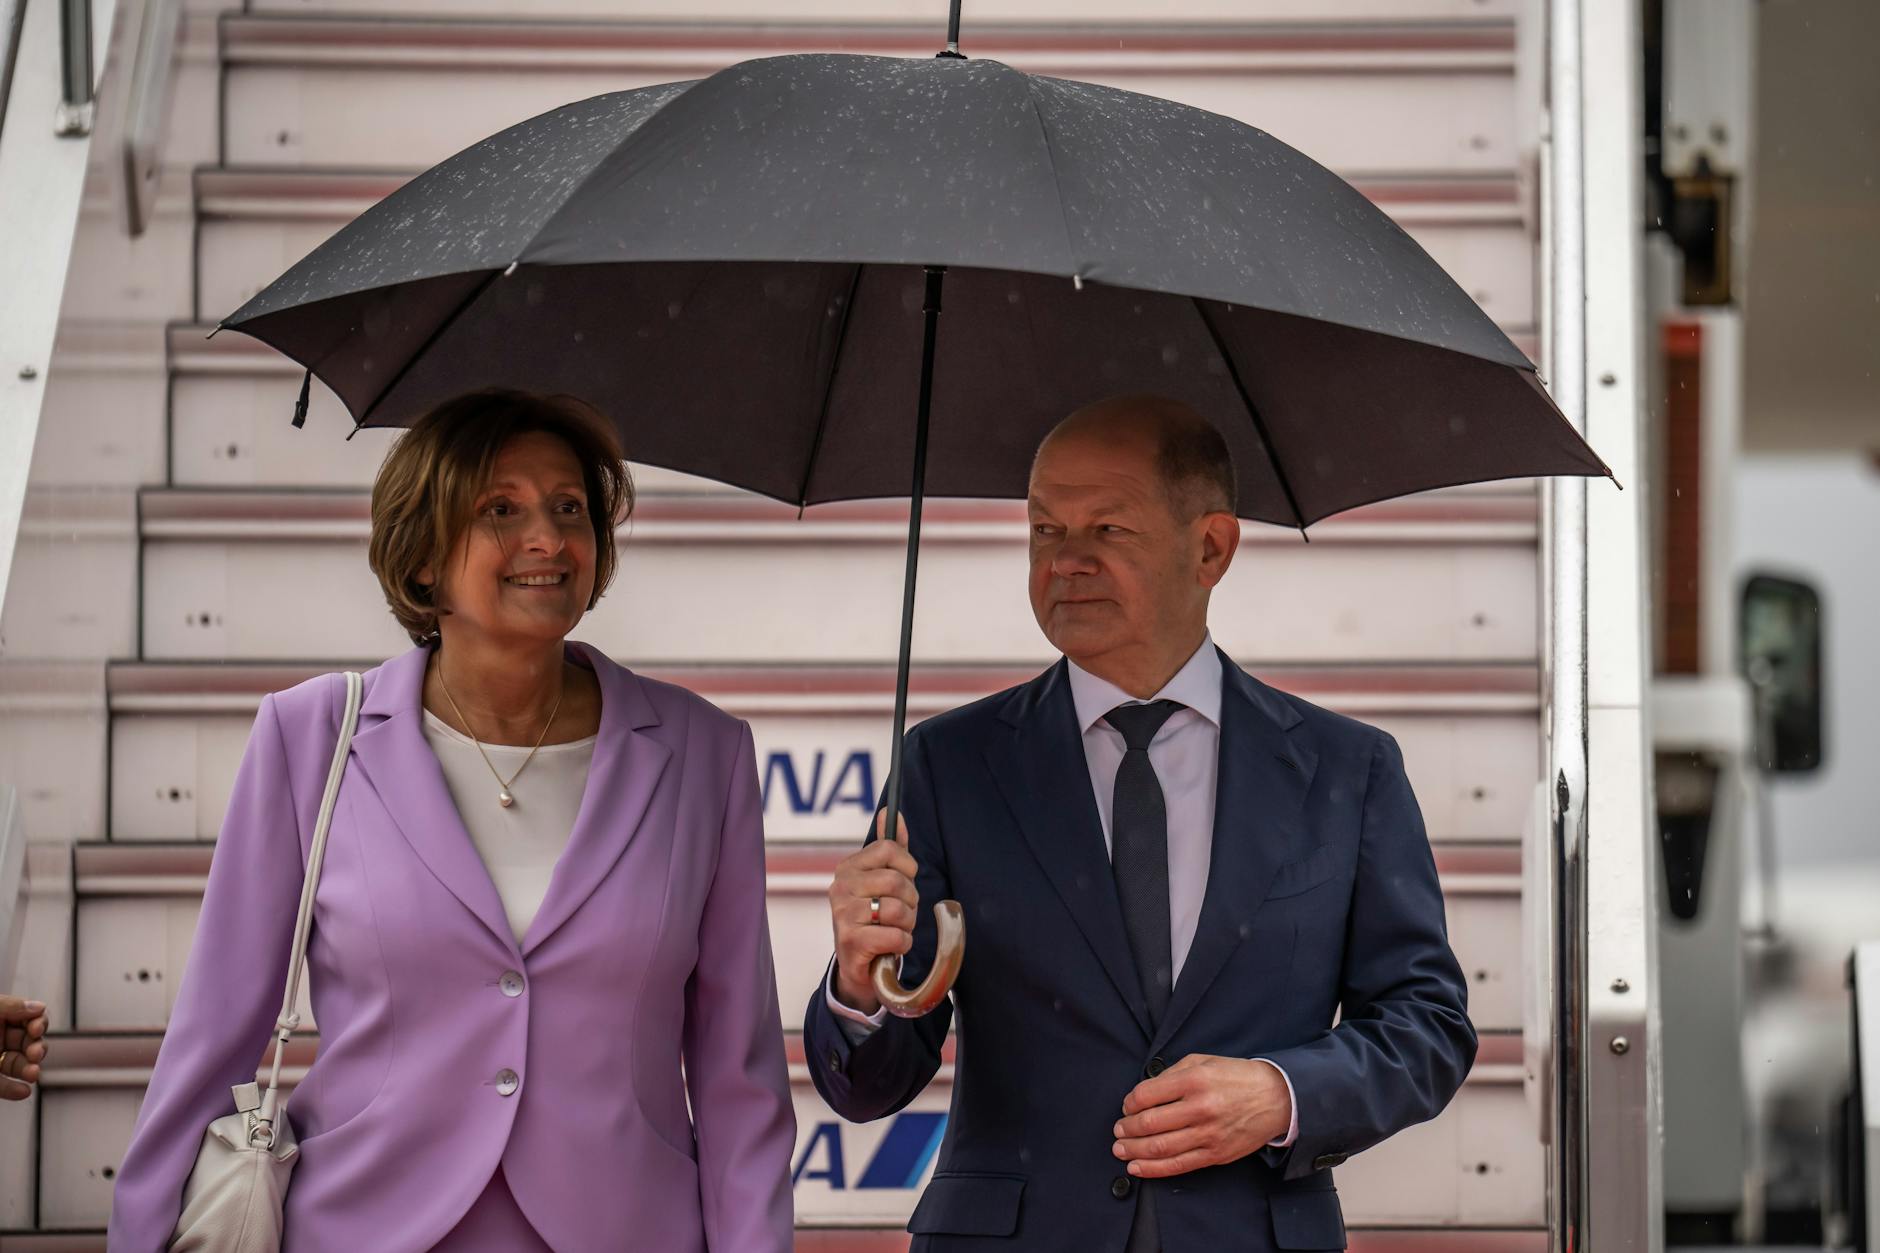 Bundeskanzler Olaf Scholz (SPD) und seine Frau Britta Ernst kommen am Flughafen an.